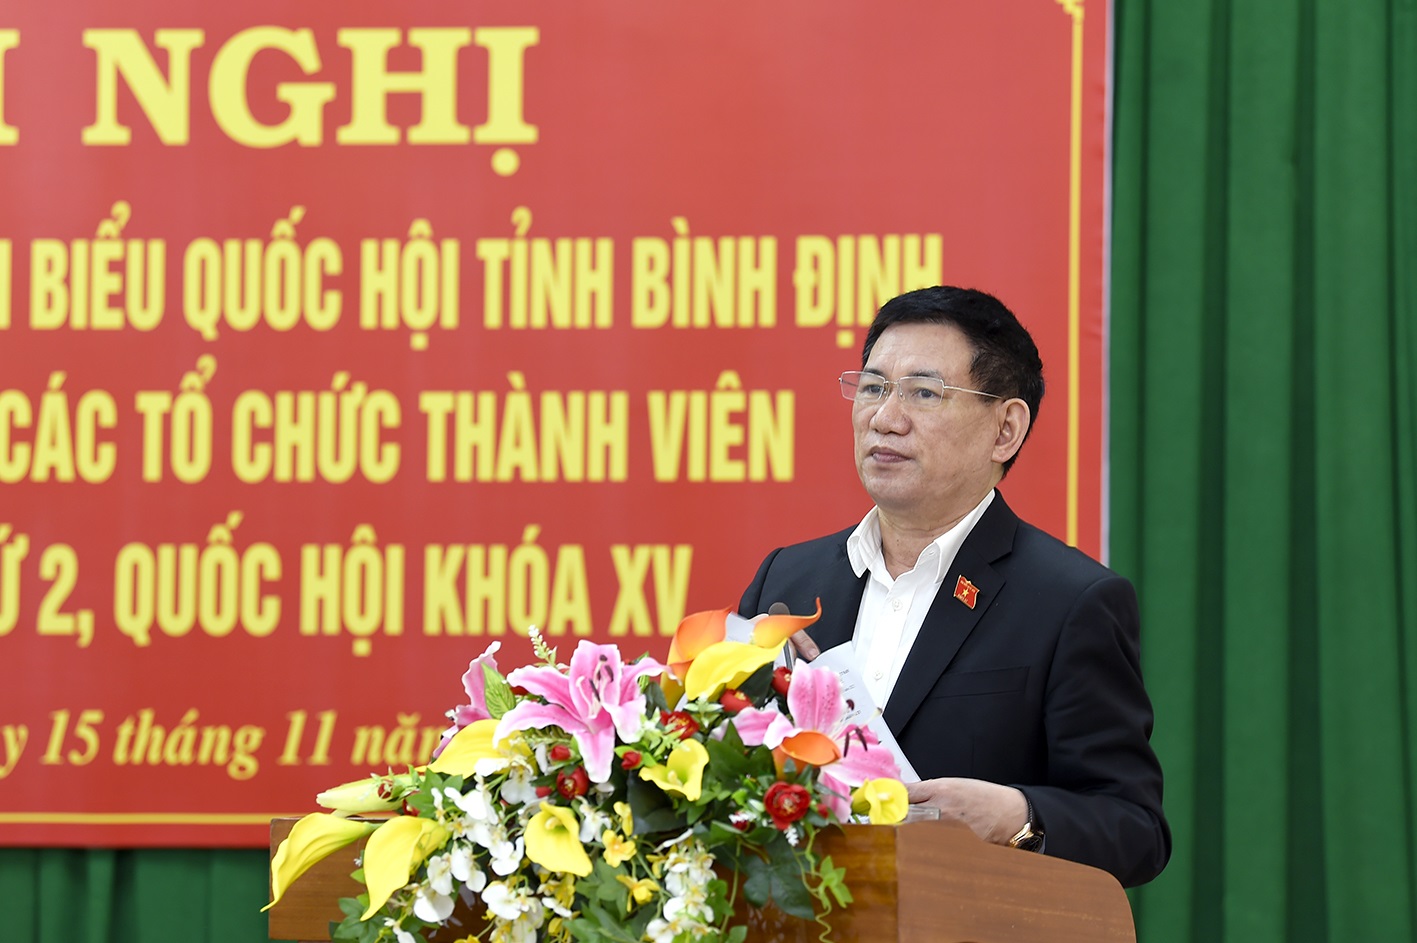 Bộ trưởng Hồ Đức Phớc tiếp xúc cử tri tại tỉnh Bình Định